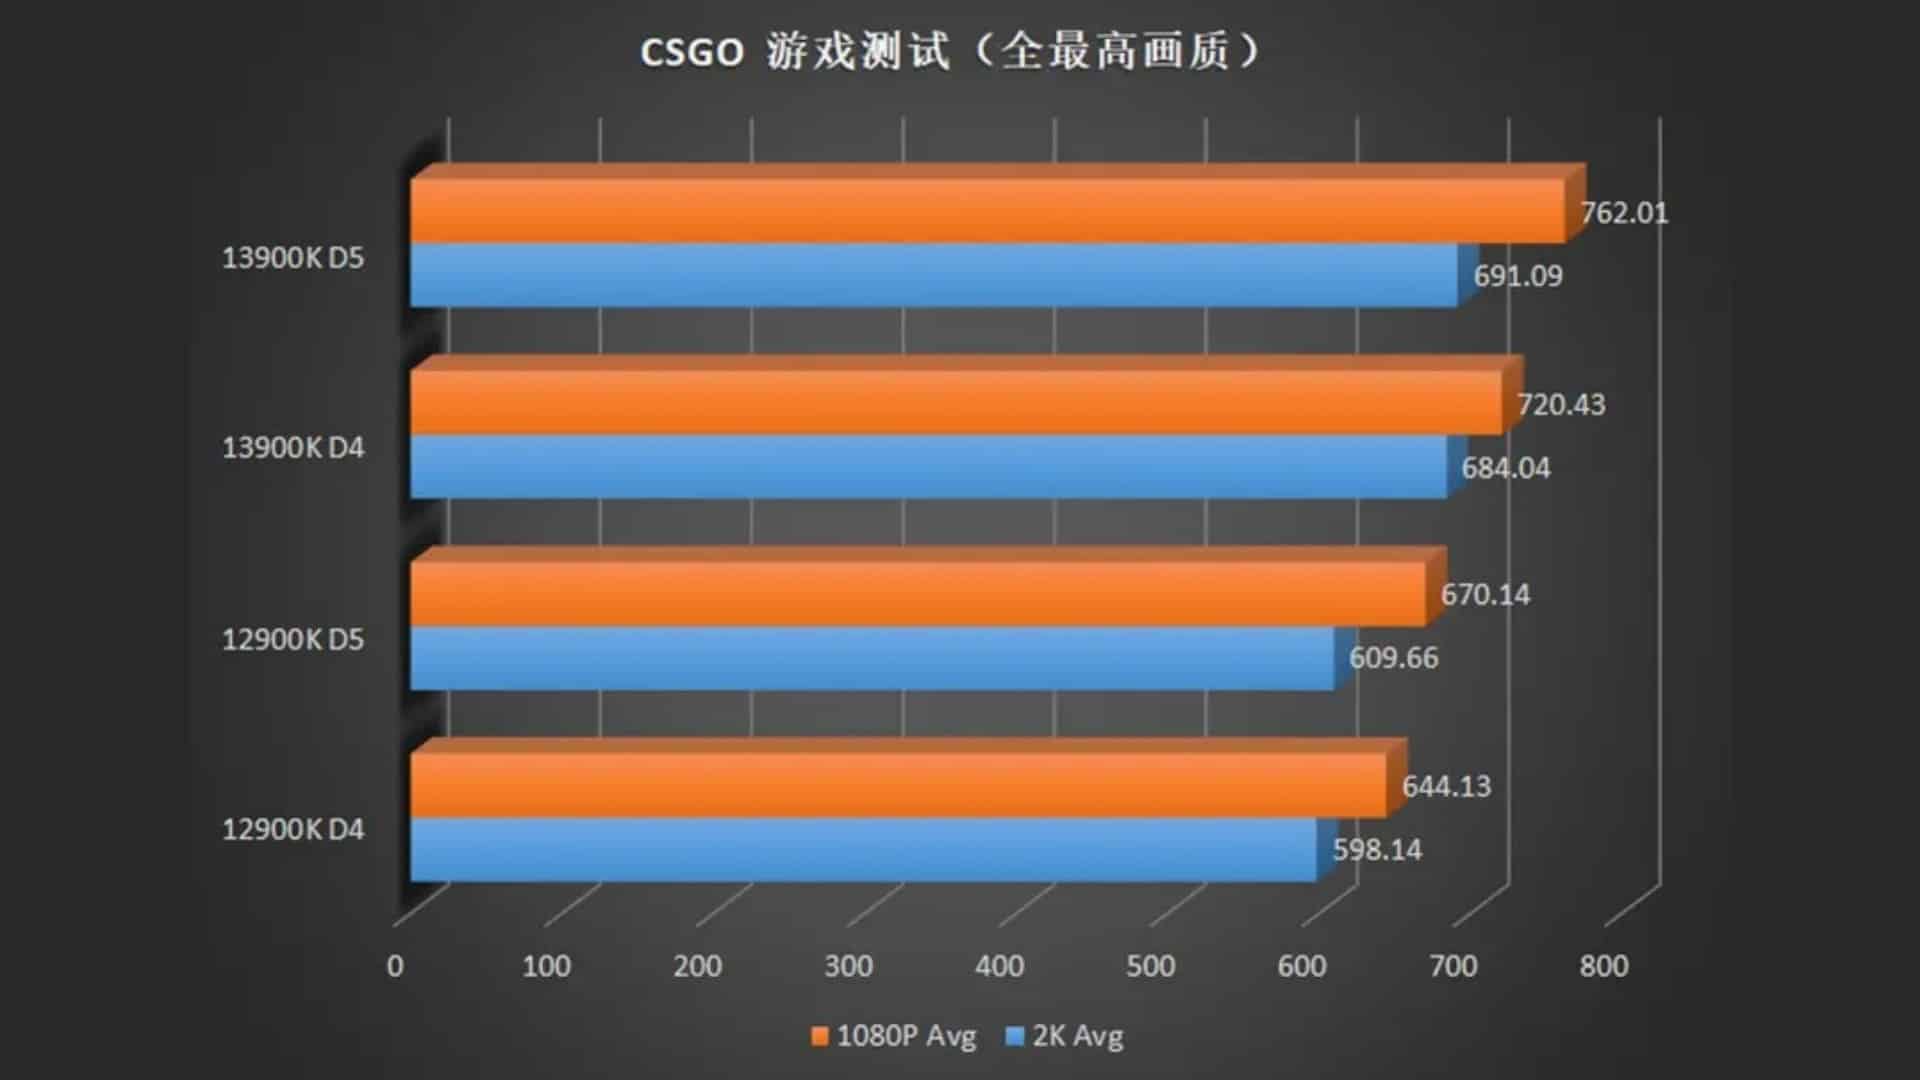 (Това е представянето на Core i9 13900K в сравнение с предшественика му в CS:GO. (Източник на изображението: ECMS_Official))